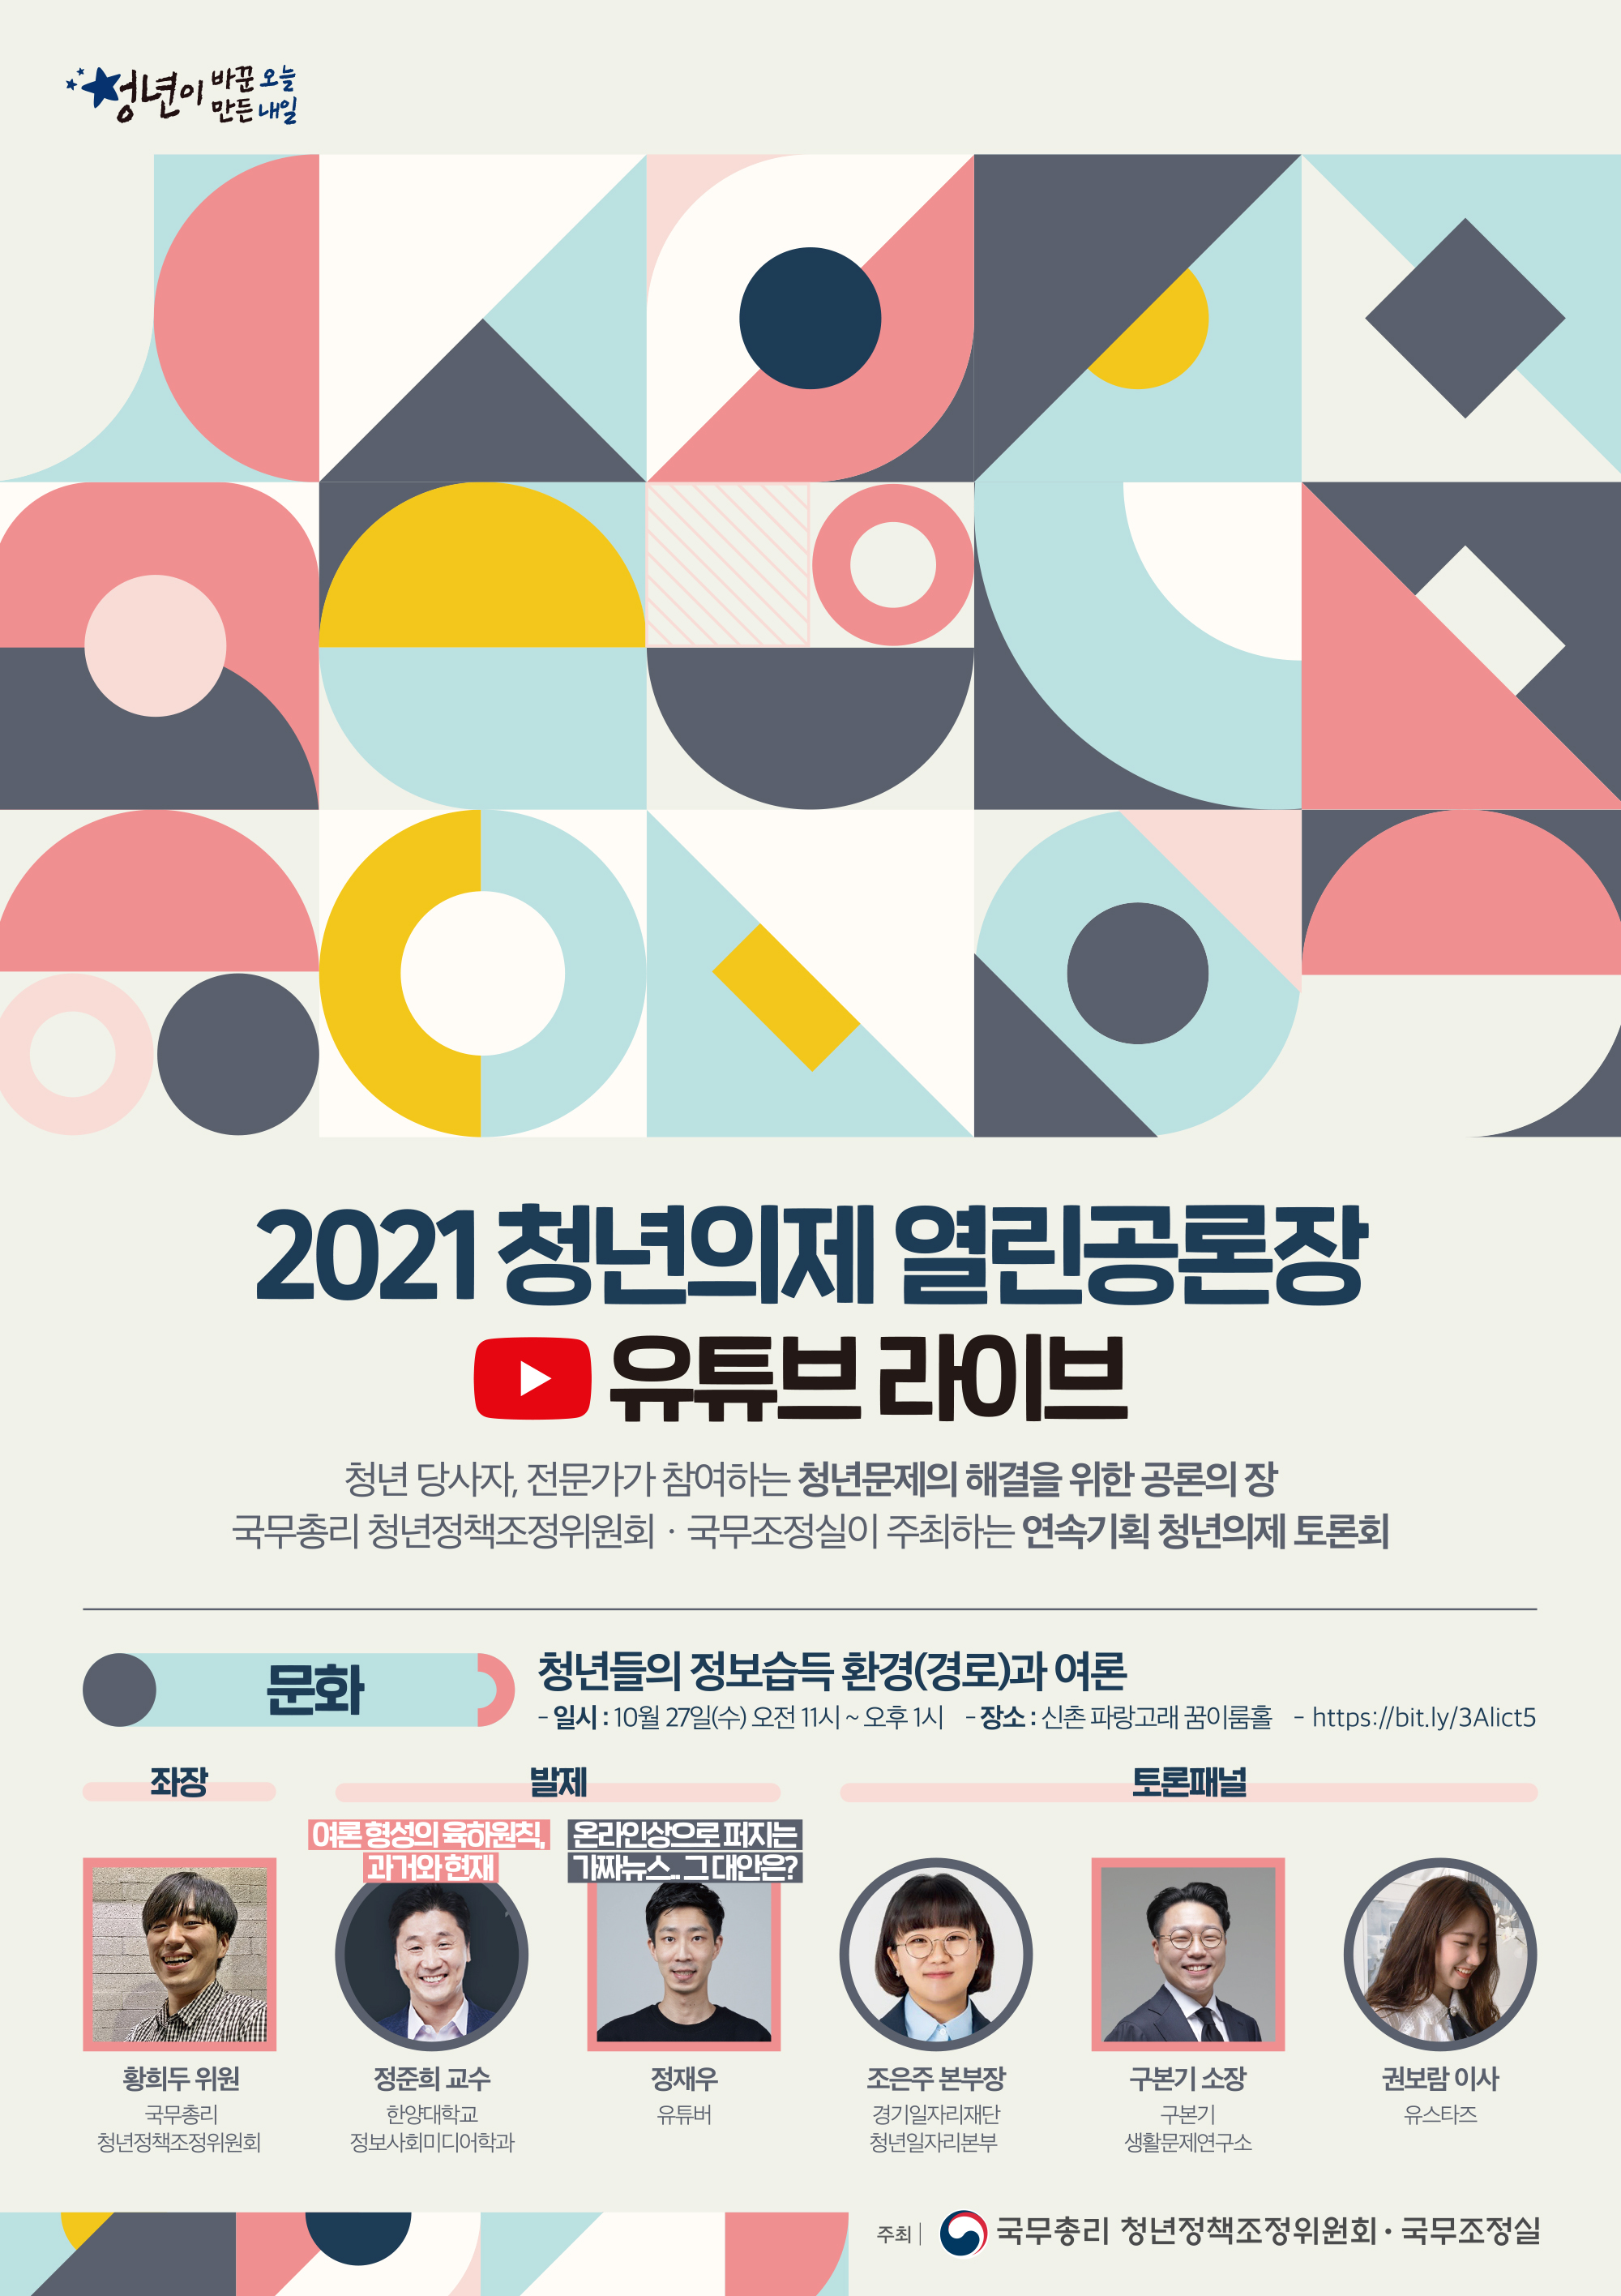 2021 청년의제 열린공론장(문화) 개최